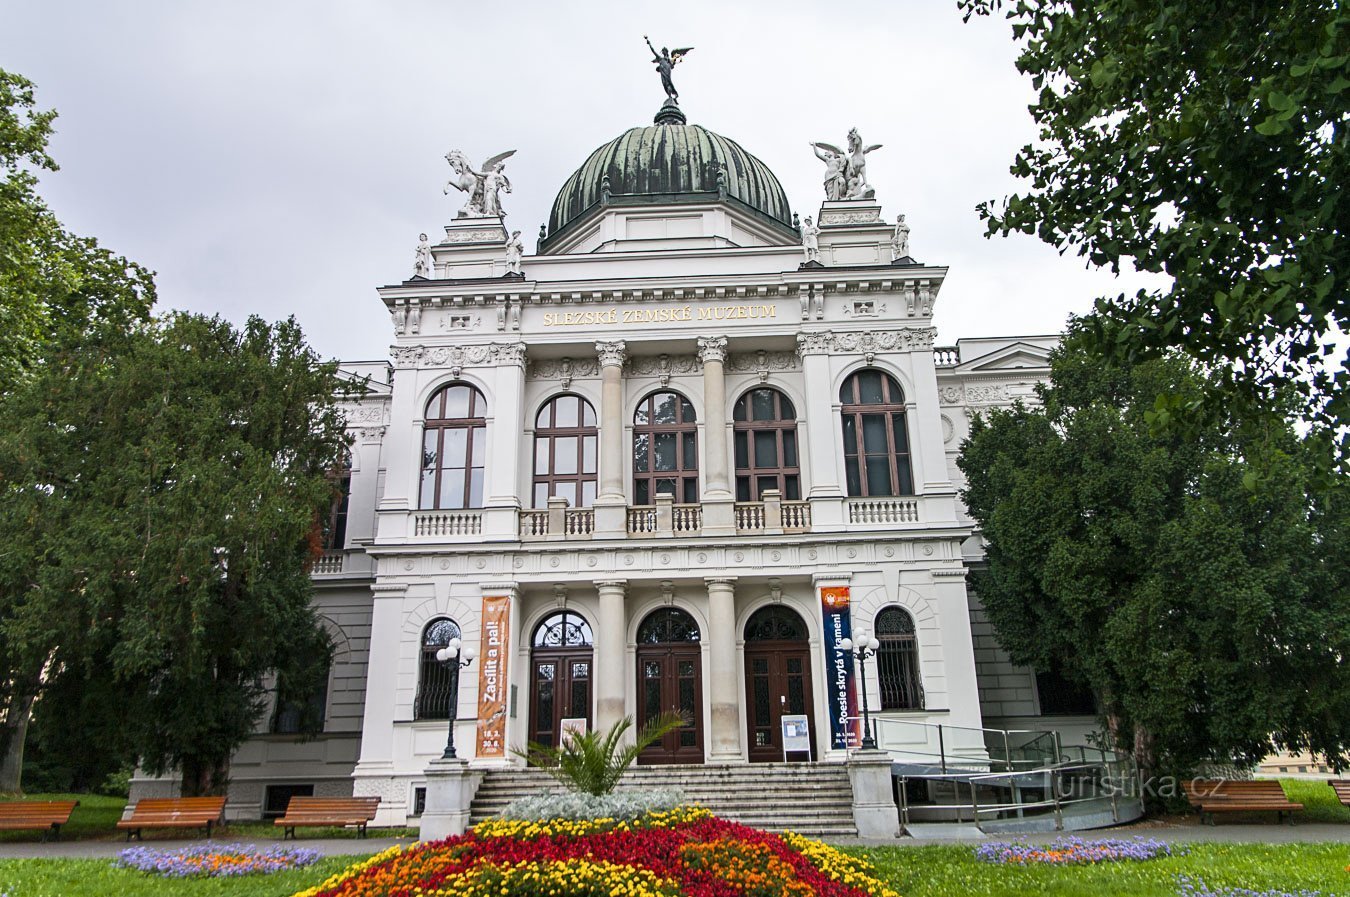 Opava - Bảo tàng khu vực Silesian (hầu như không có)